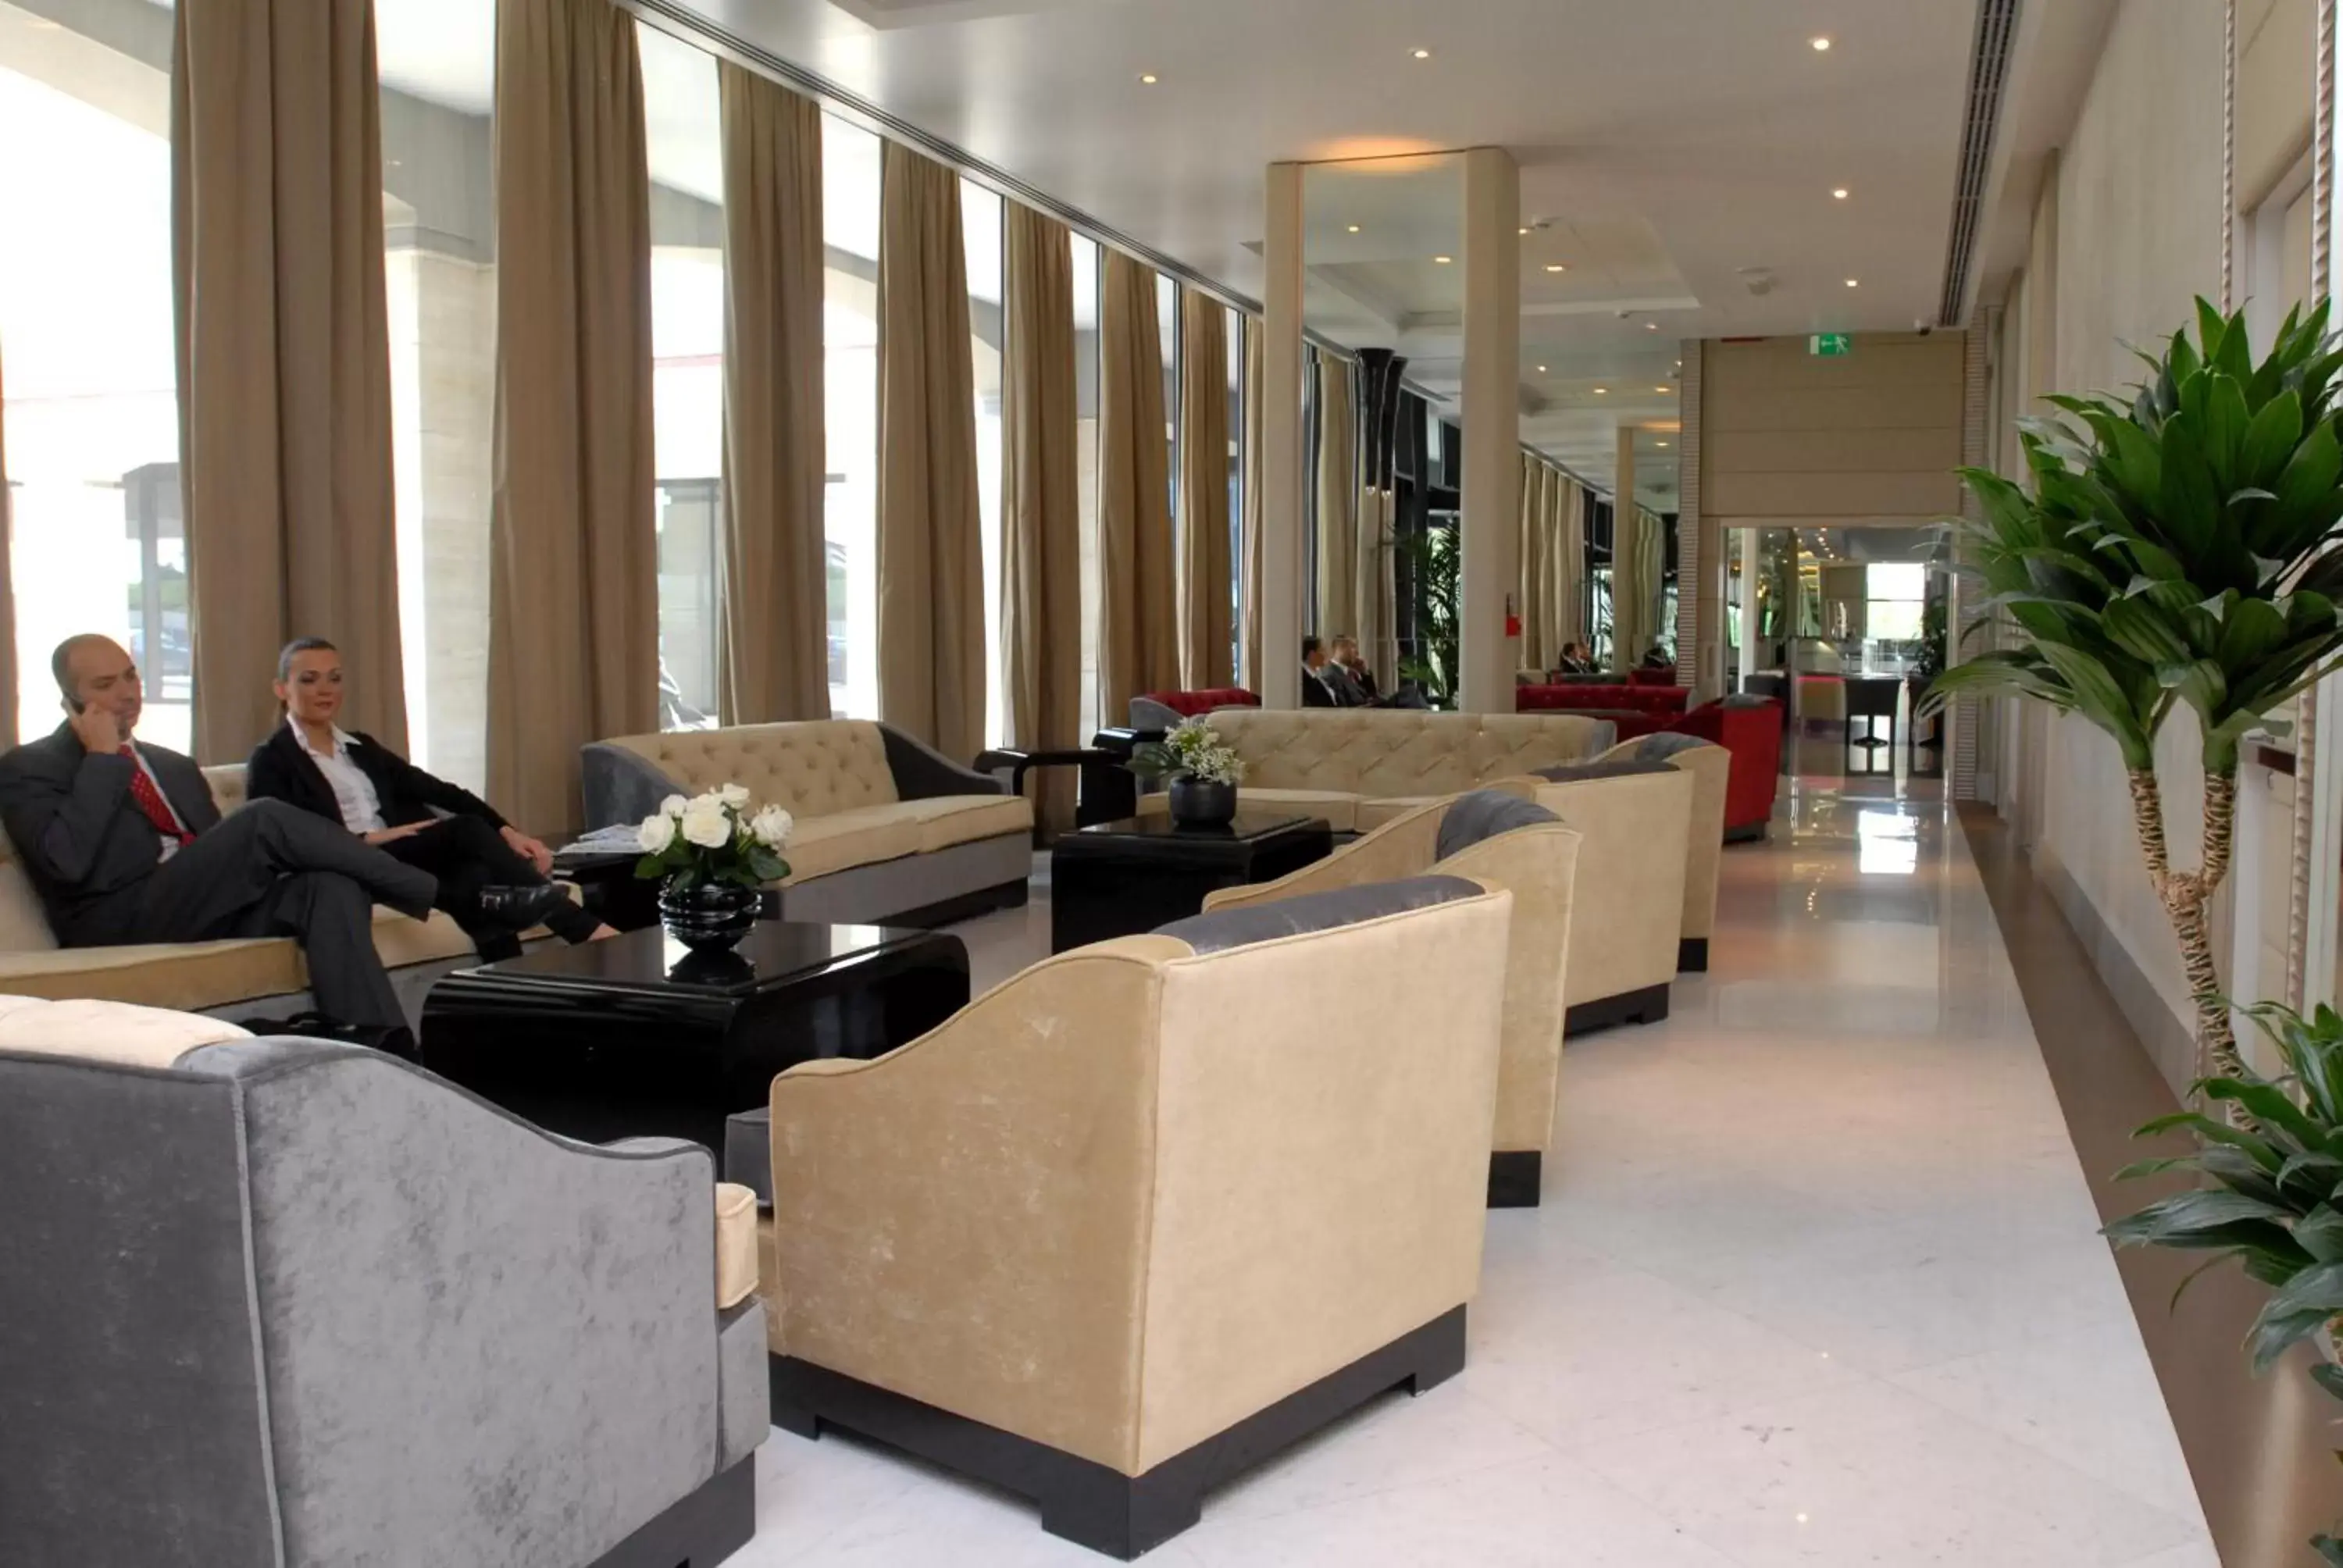 Lobby or reception in Grand Hotel Duca Di Mantova